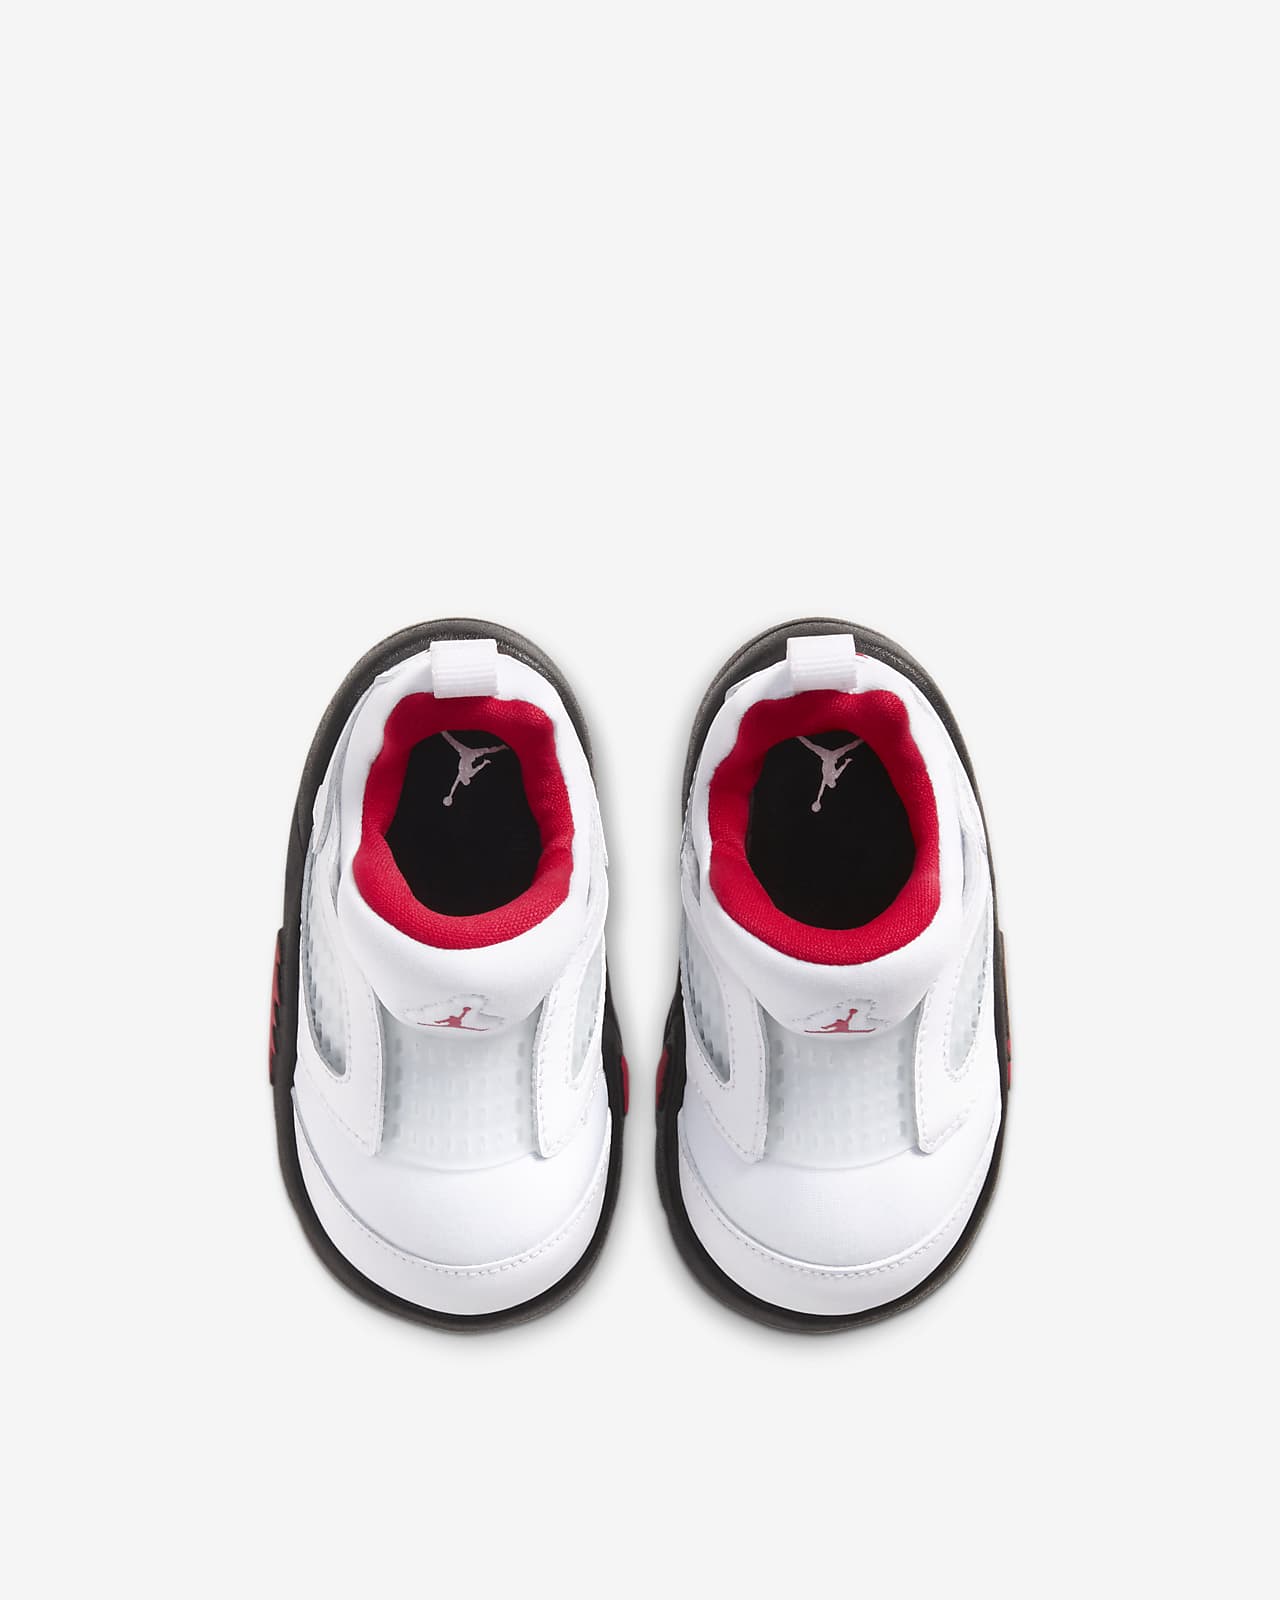 jordan 5 toddler shoes